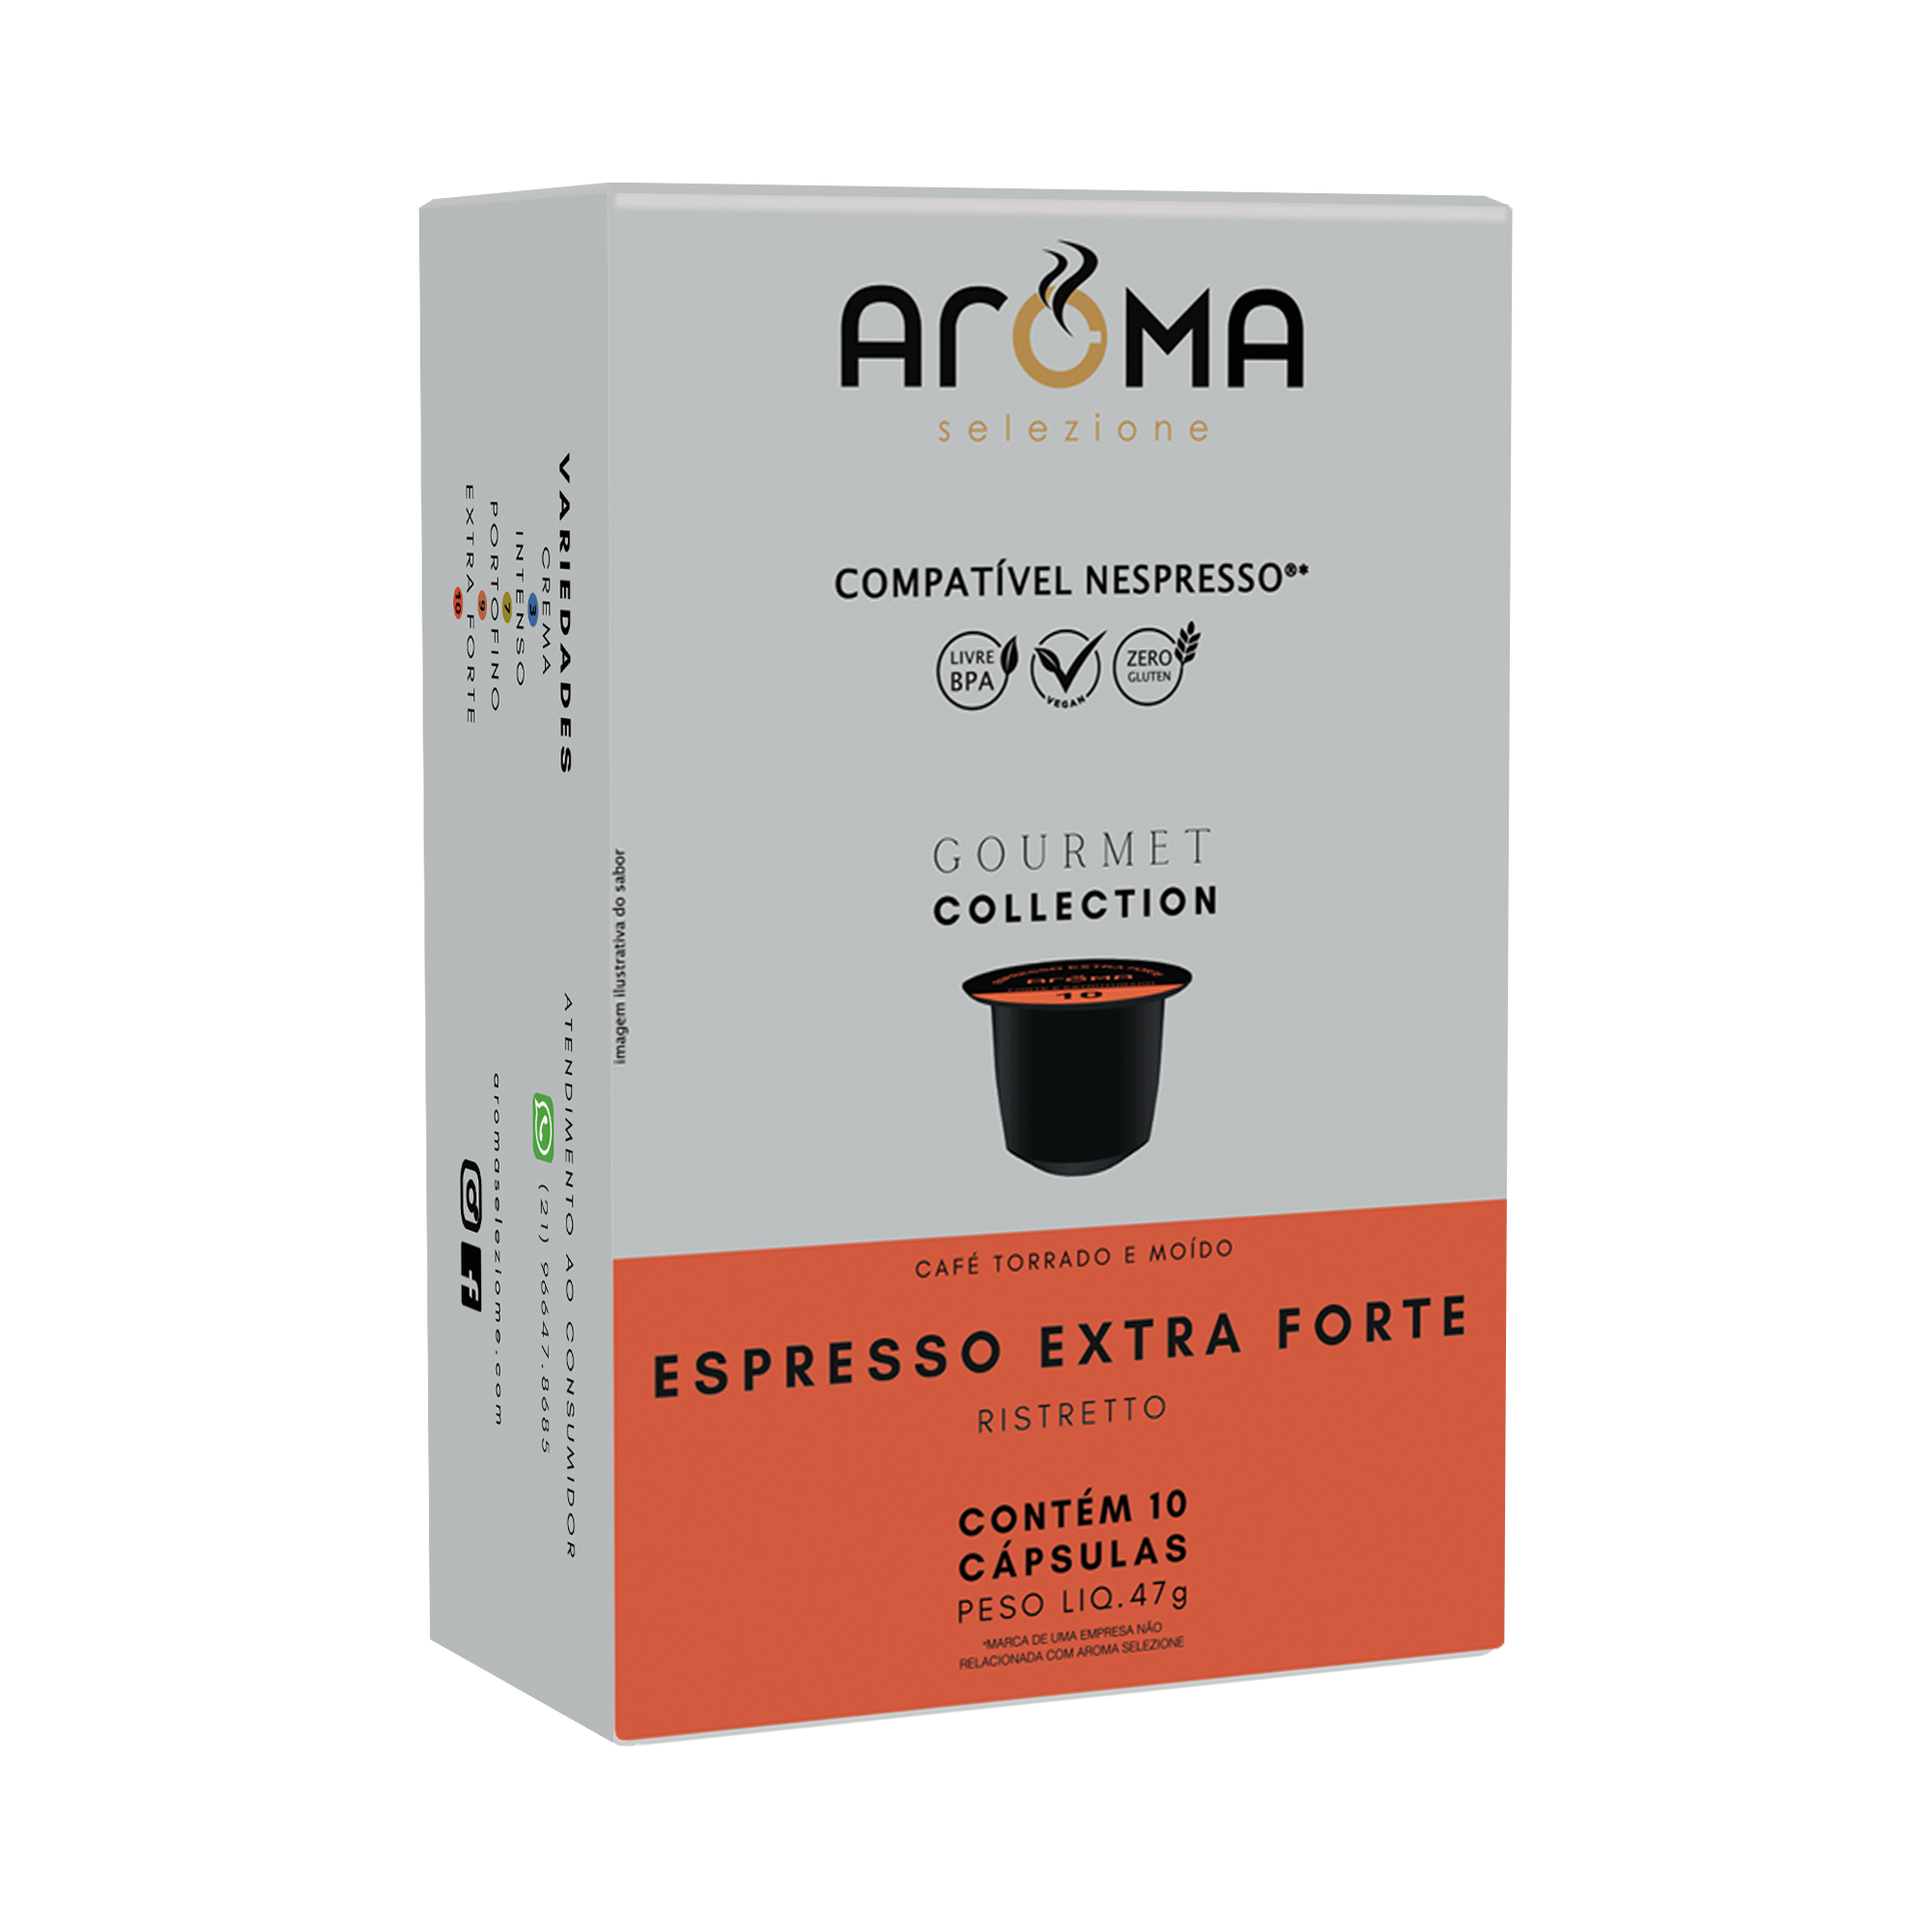 Caixa com 10 cápsulas para Nespresso ®*- Espresso Extra Forte